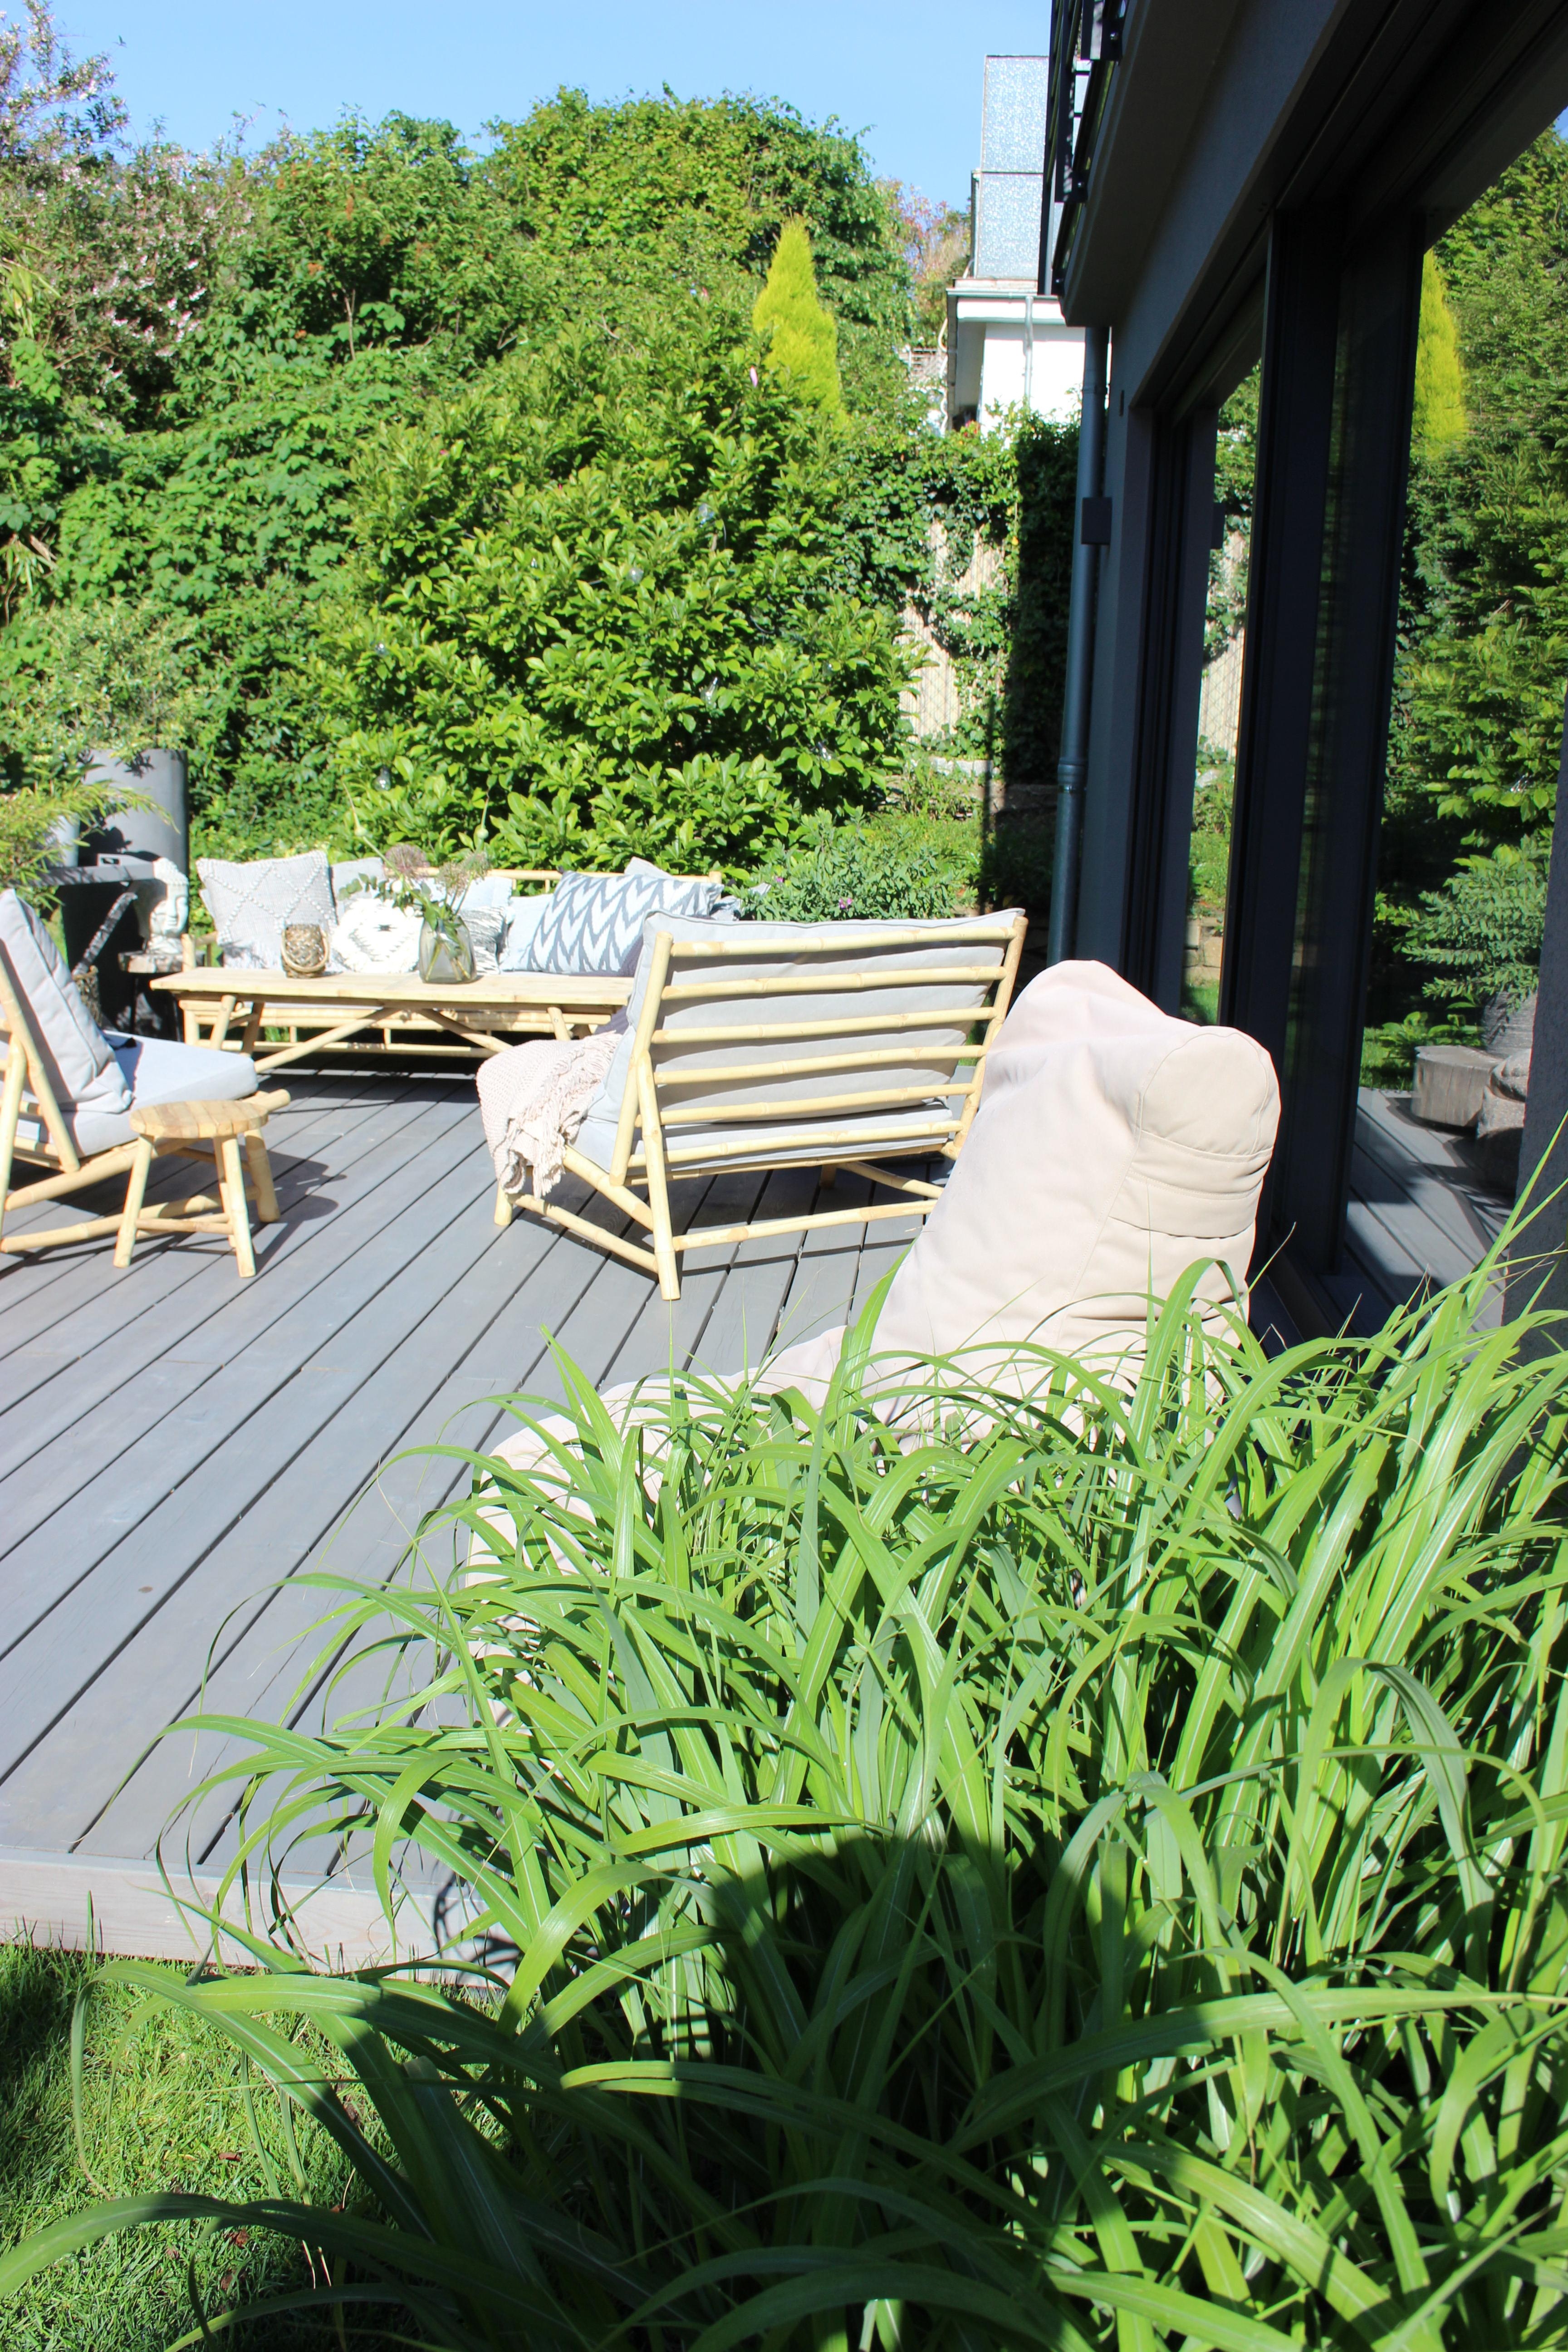 #terrasse #garten #outdoor #terrassengestaltung #sommer #gräserliebe #pflanzen #gartengestaltung #bambus #living #home